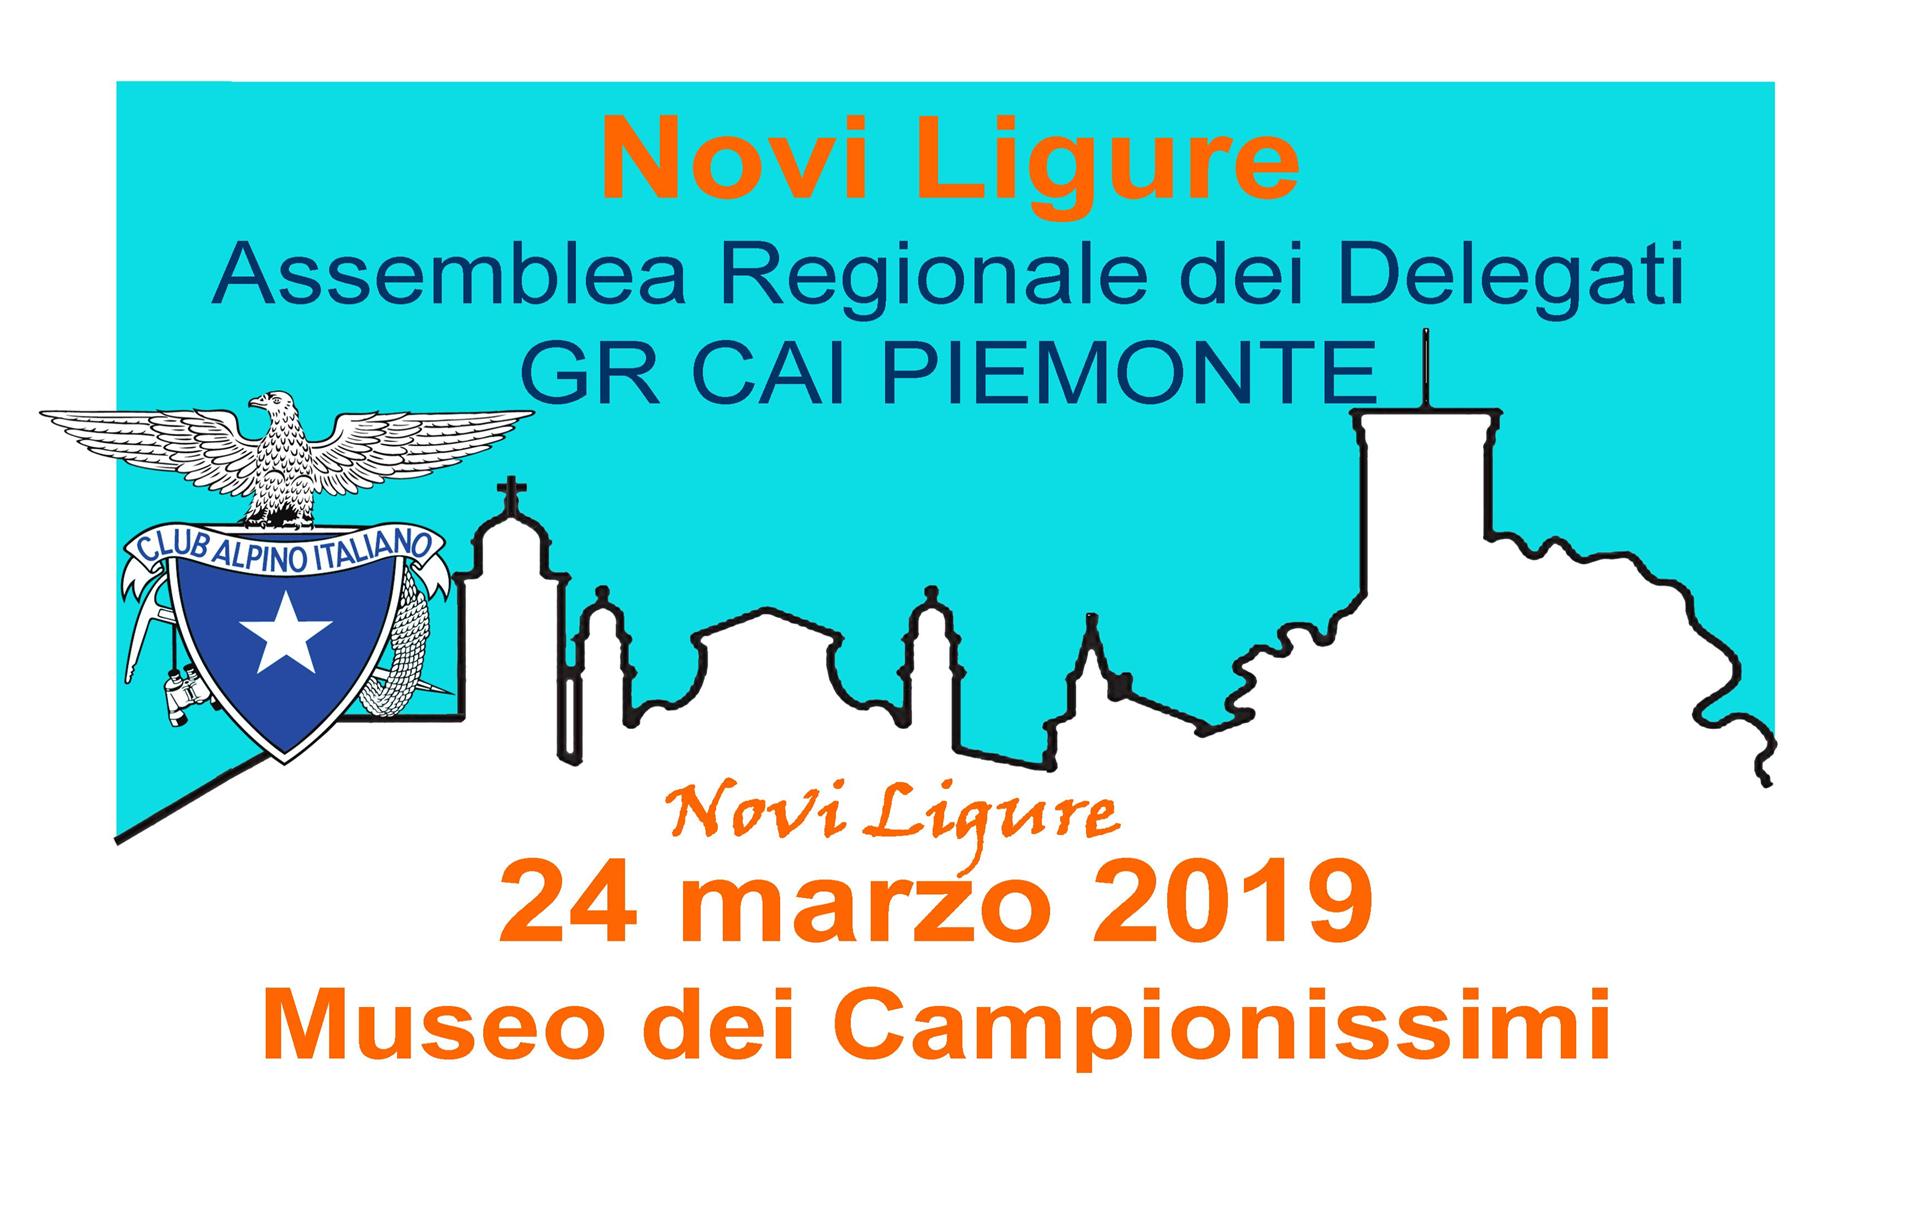 Assemble Regionale dei Delegati - Novi Ligure - 24 marzo 2019